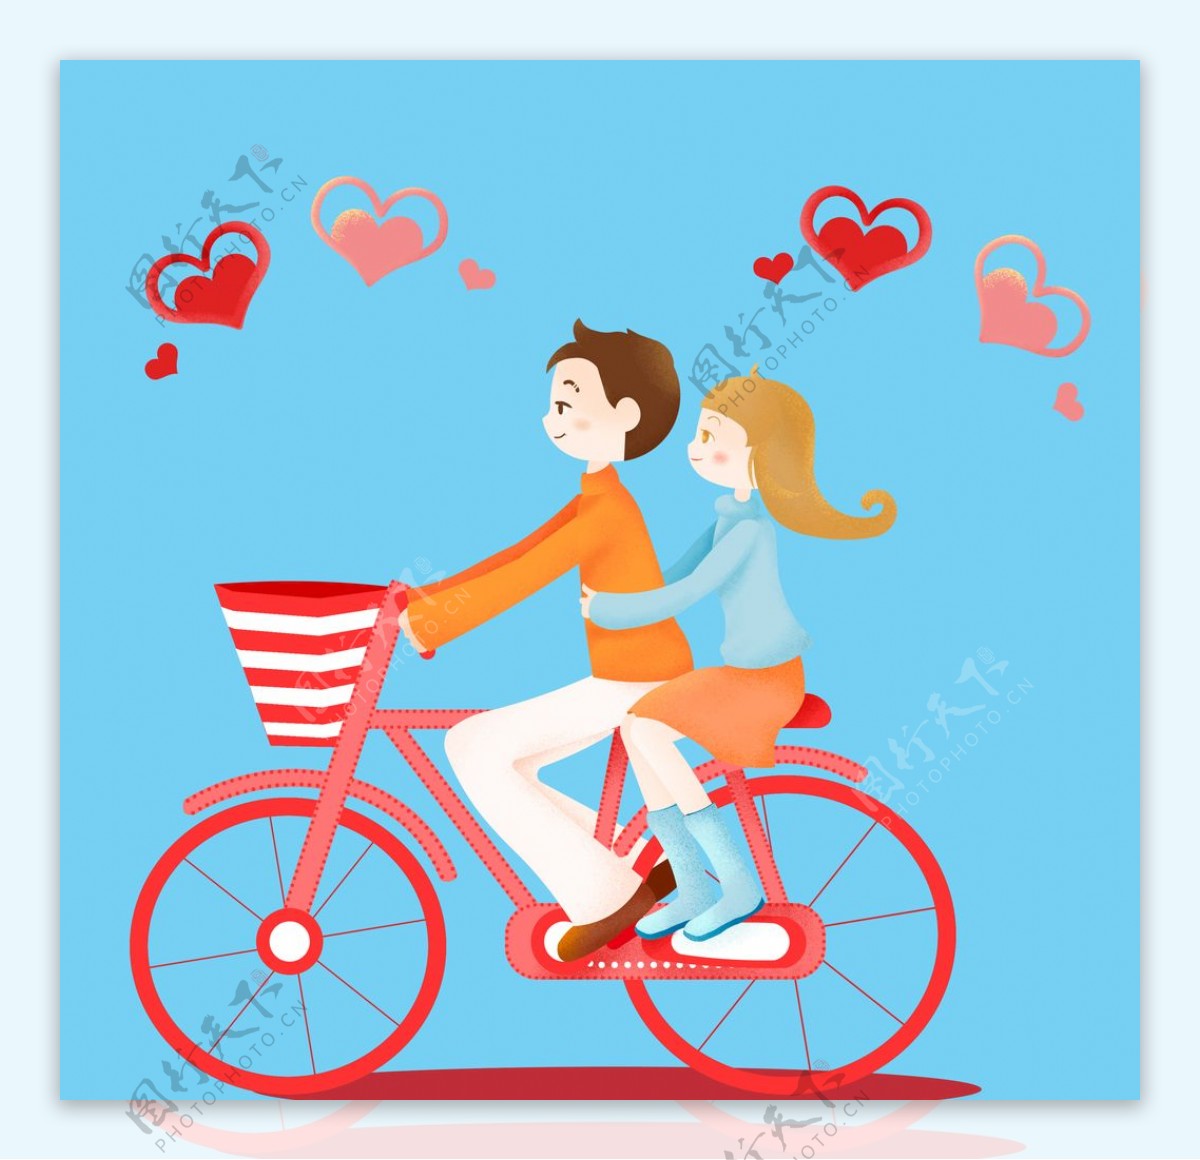 情侣骑单车郊游图片